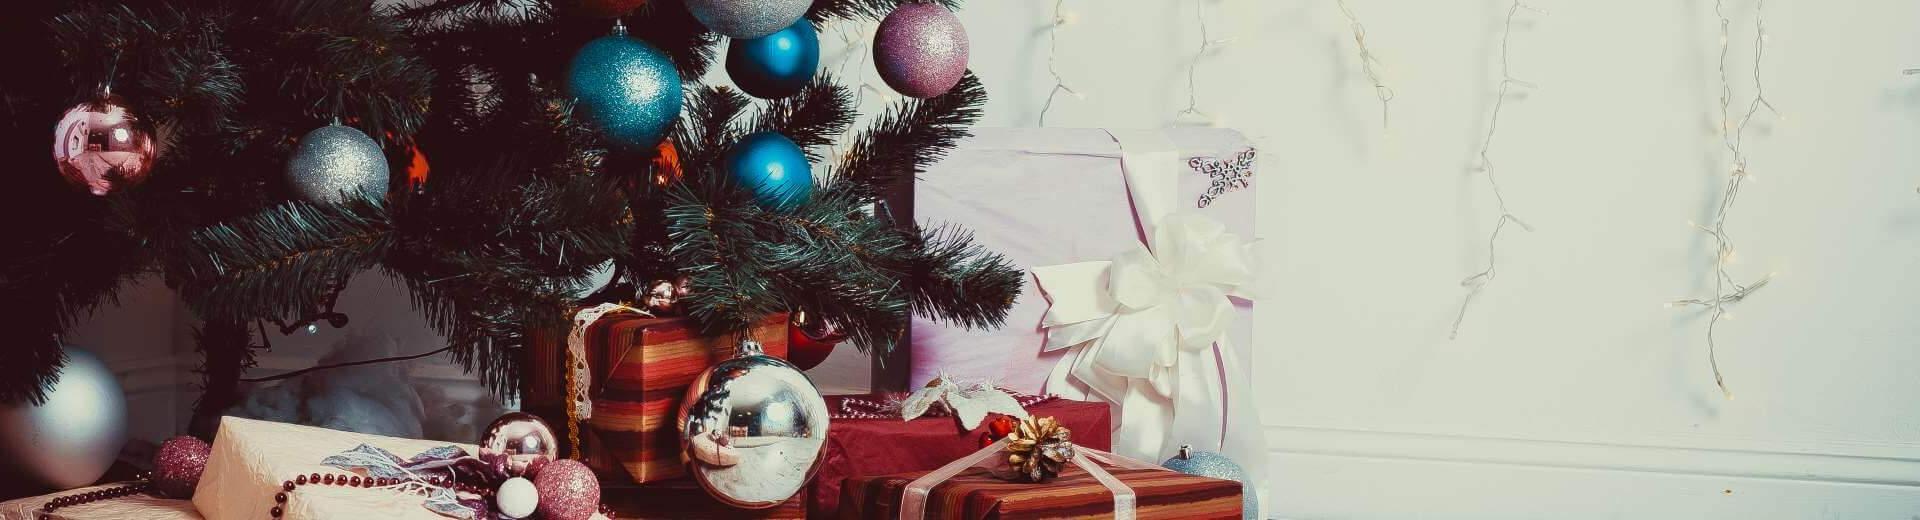 Weihnachten im Ferienhaus in Österreich | Casamundo - Casamundo